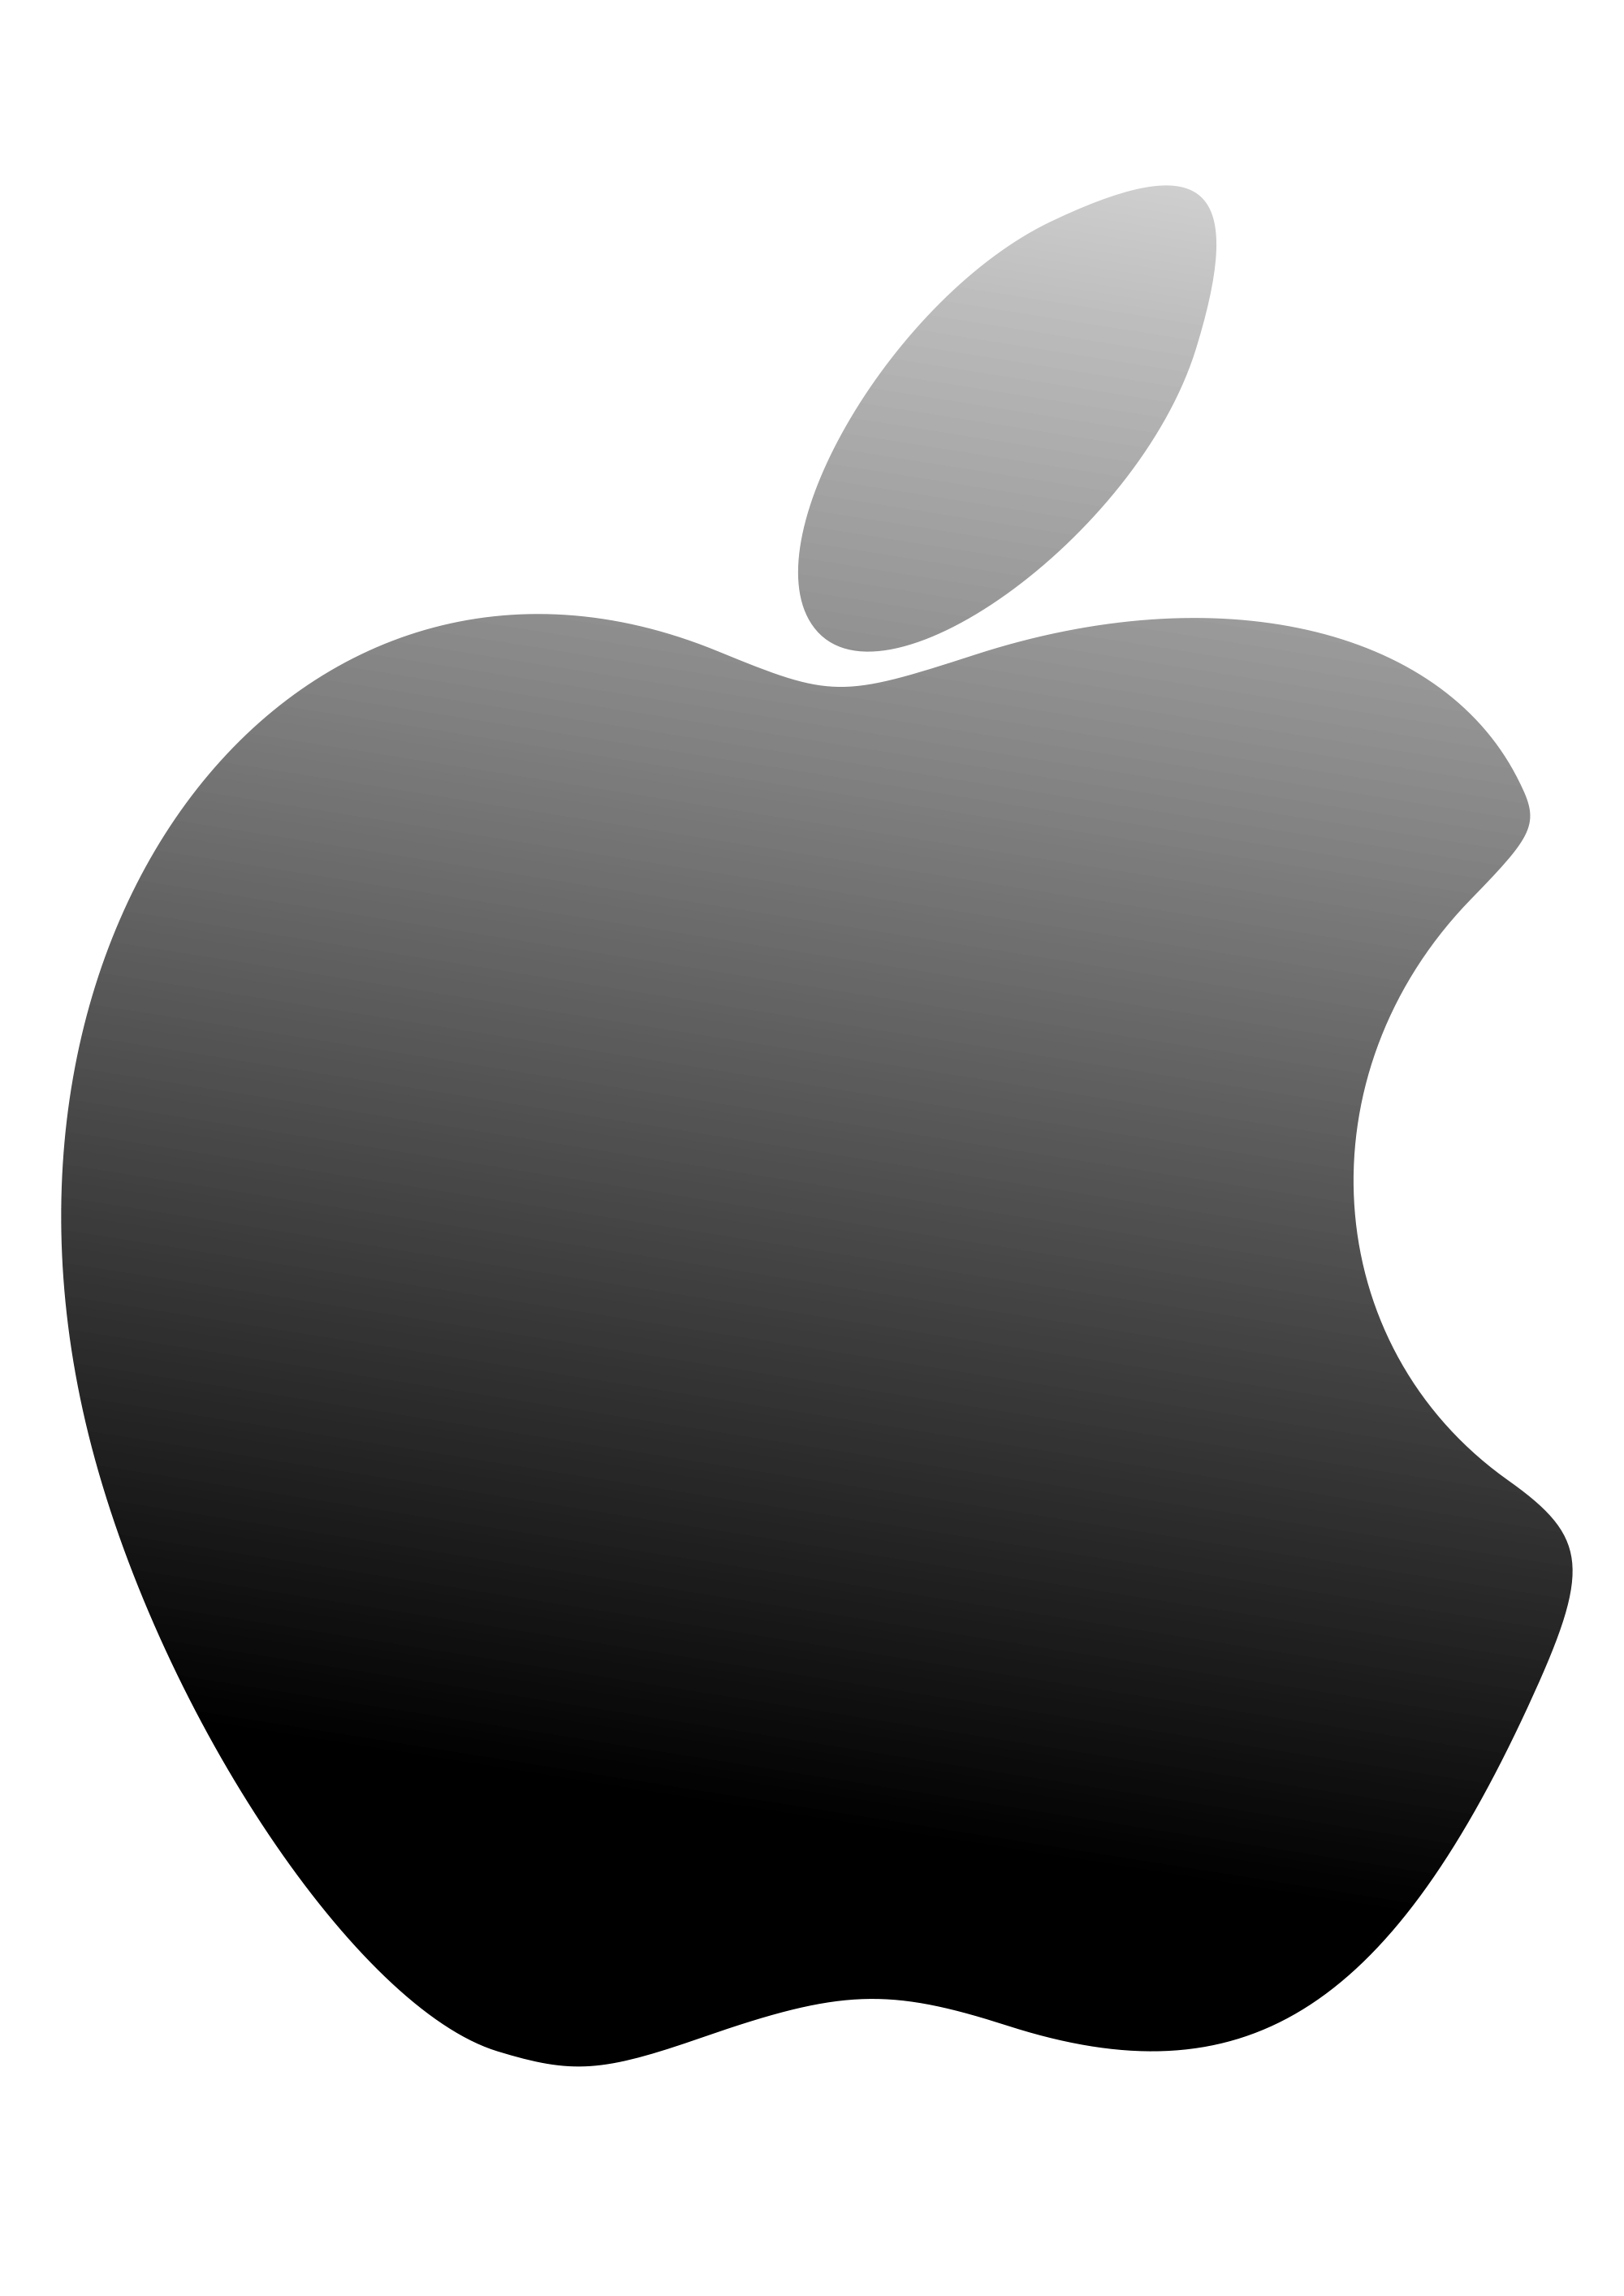 Download PNG image - Black Apple Logo PNG Transparent Image 